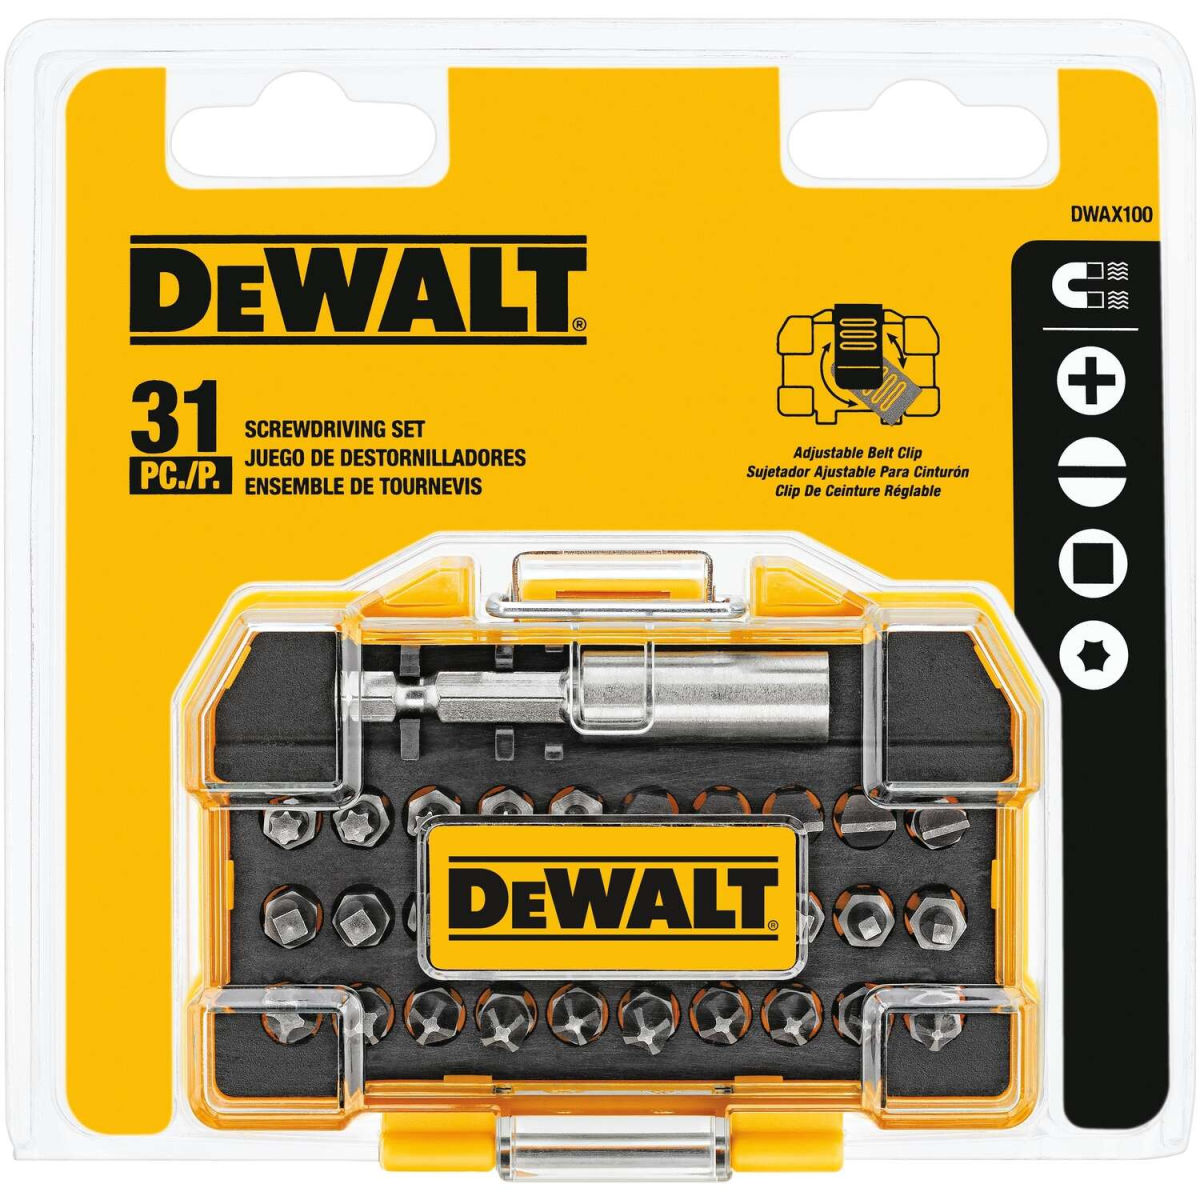 DEWALT DWAX100 31-Piece Screwdriver Set